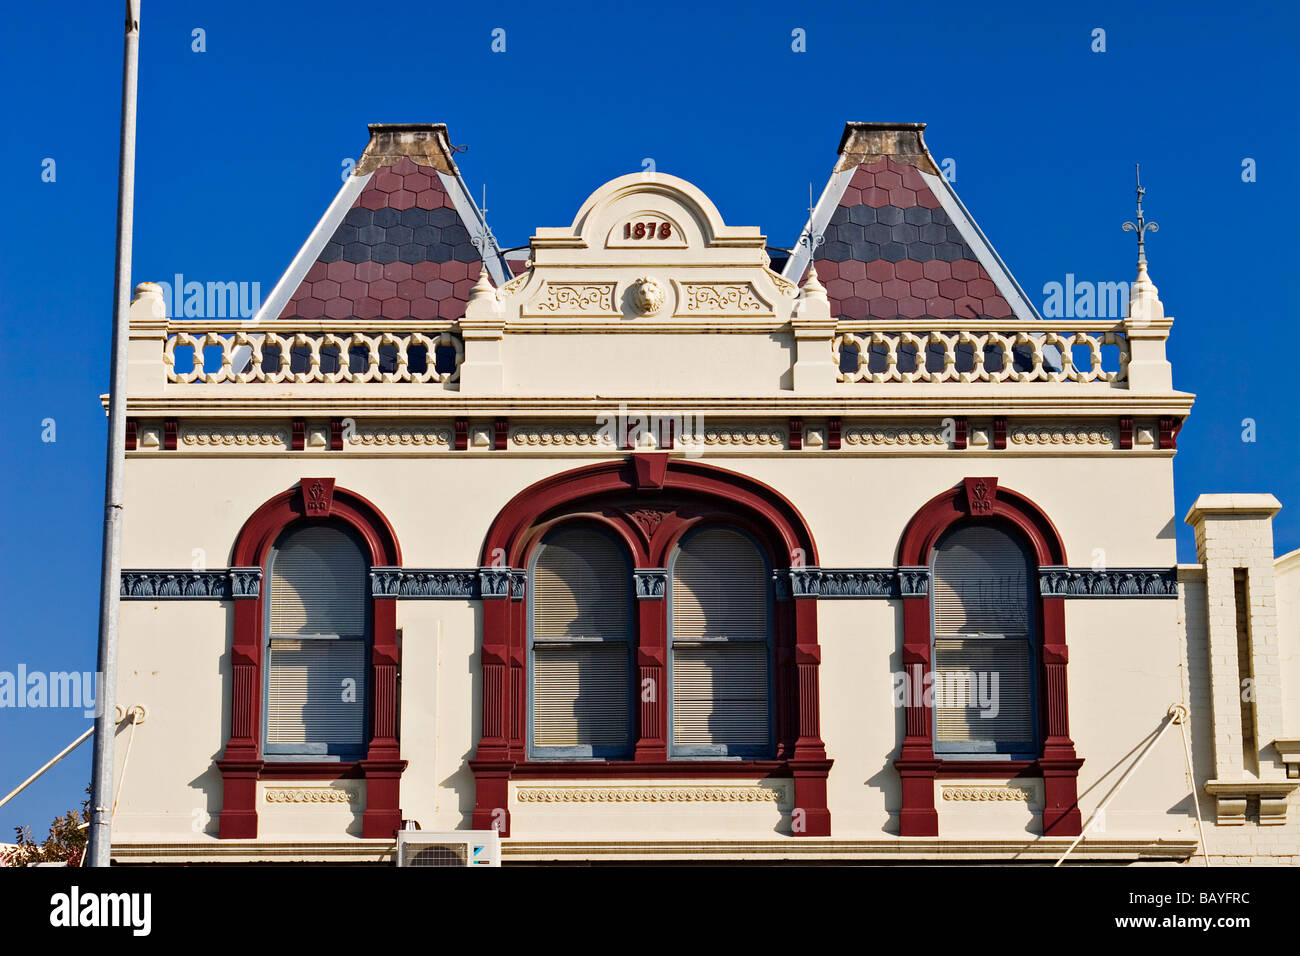 Geelong Australia / die Fassade eines alten Gebäude. Geelong Victoria Australien. Stockfoto